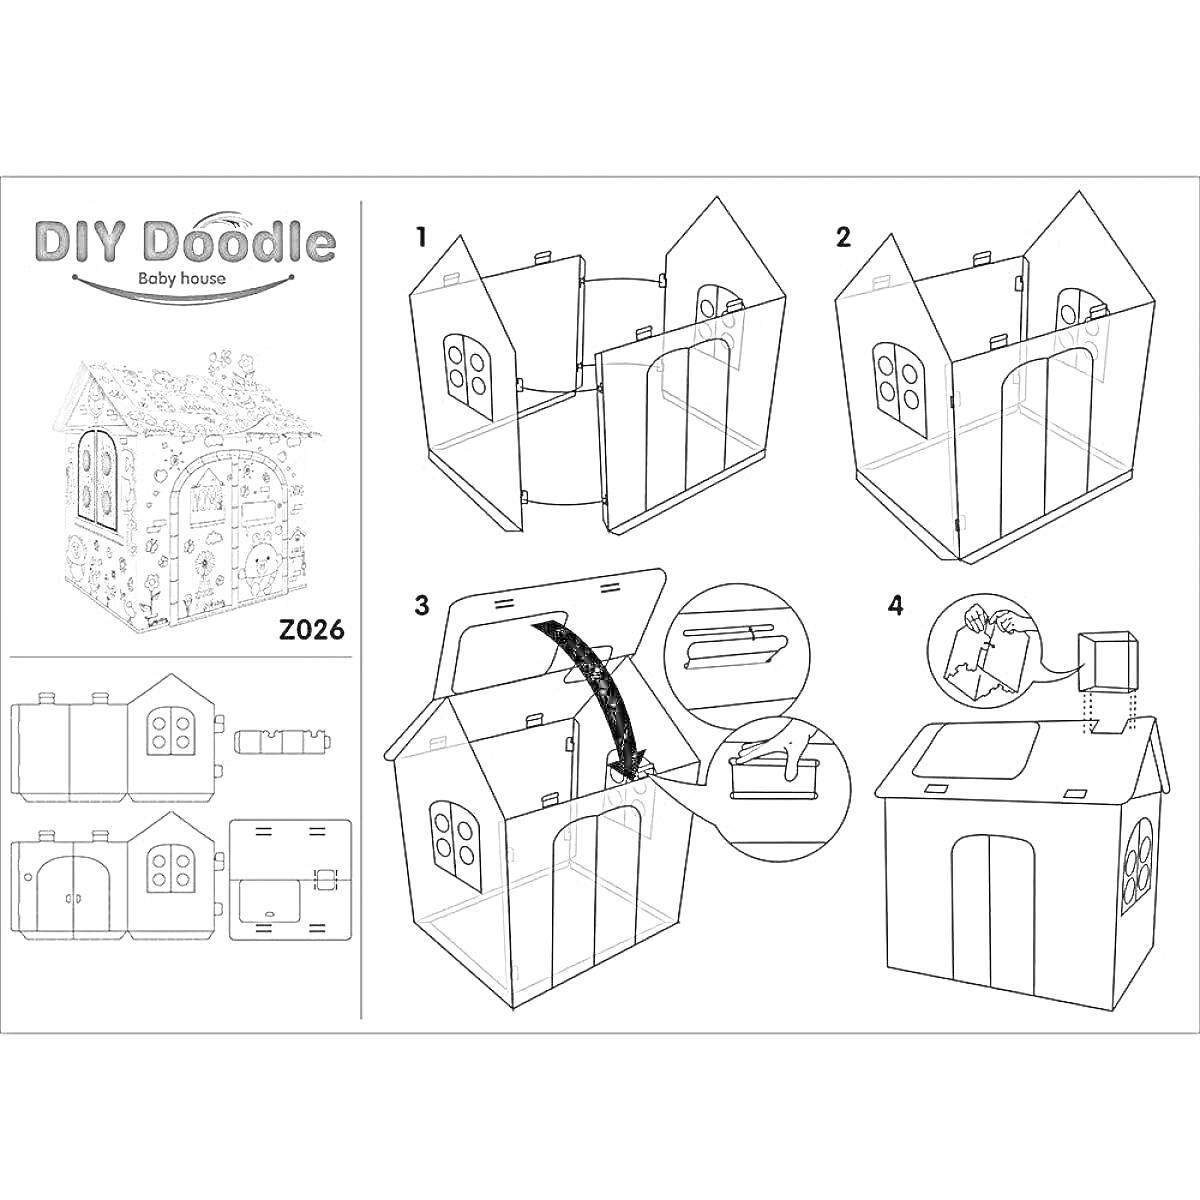 Инструкция для сборки и раскрашивания картонного домика с окнами и дверью, изображены этапы сборки